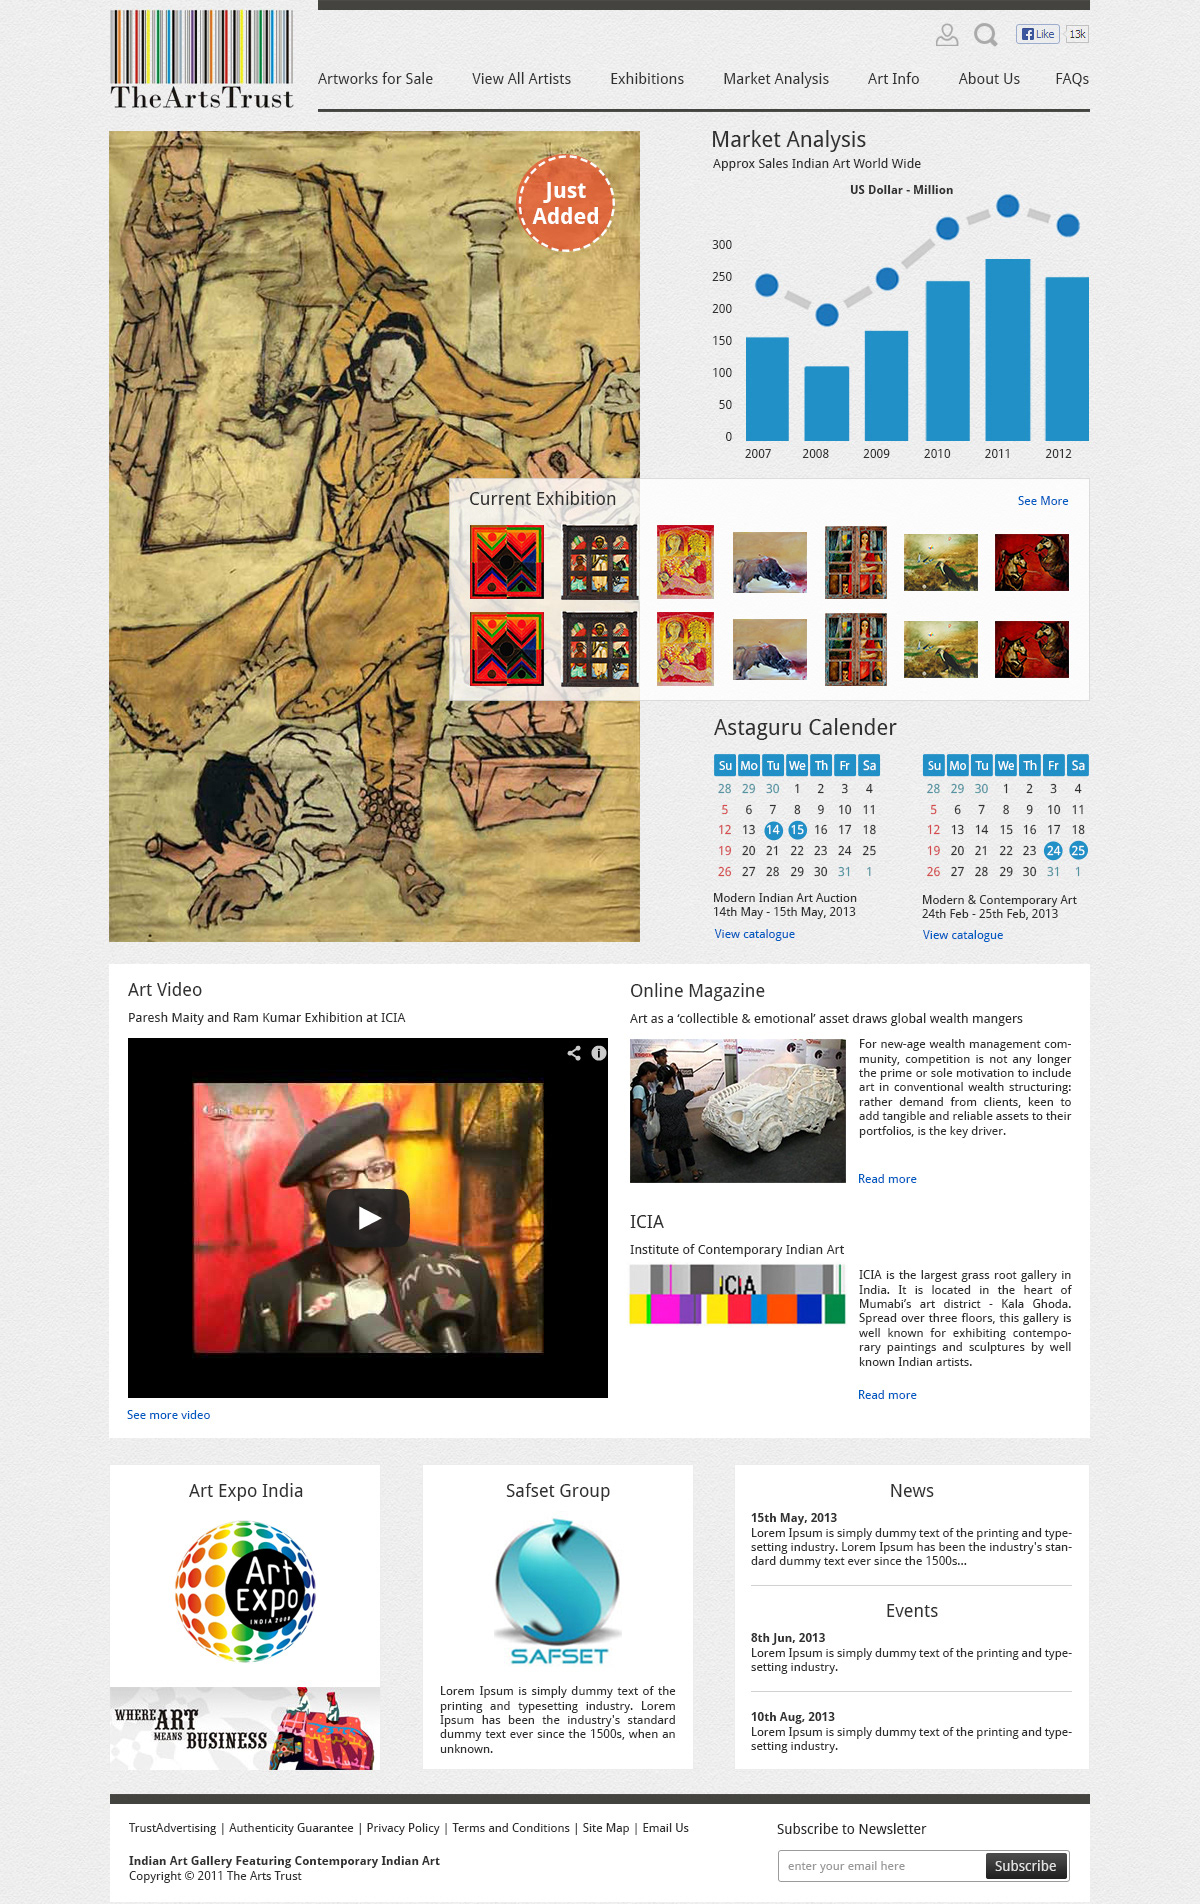 The Arts Trust information portal Arts Portal